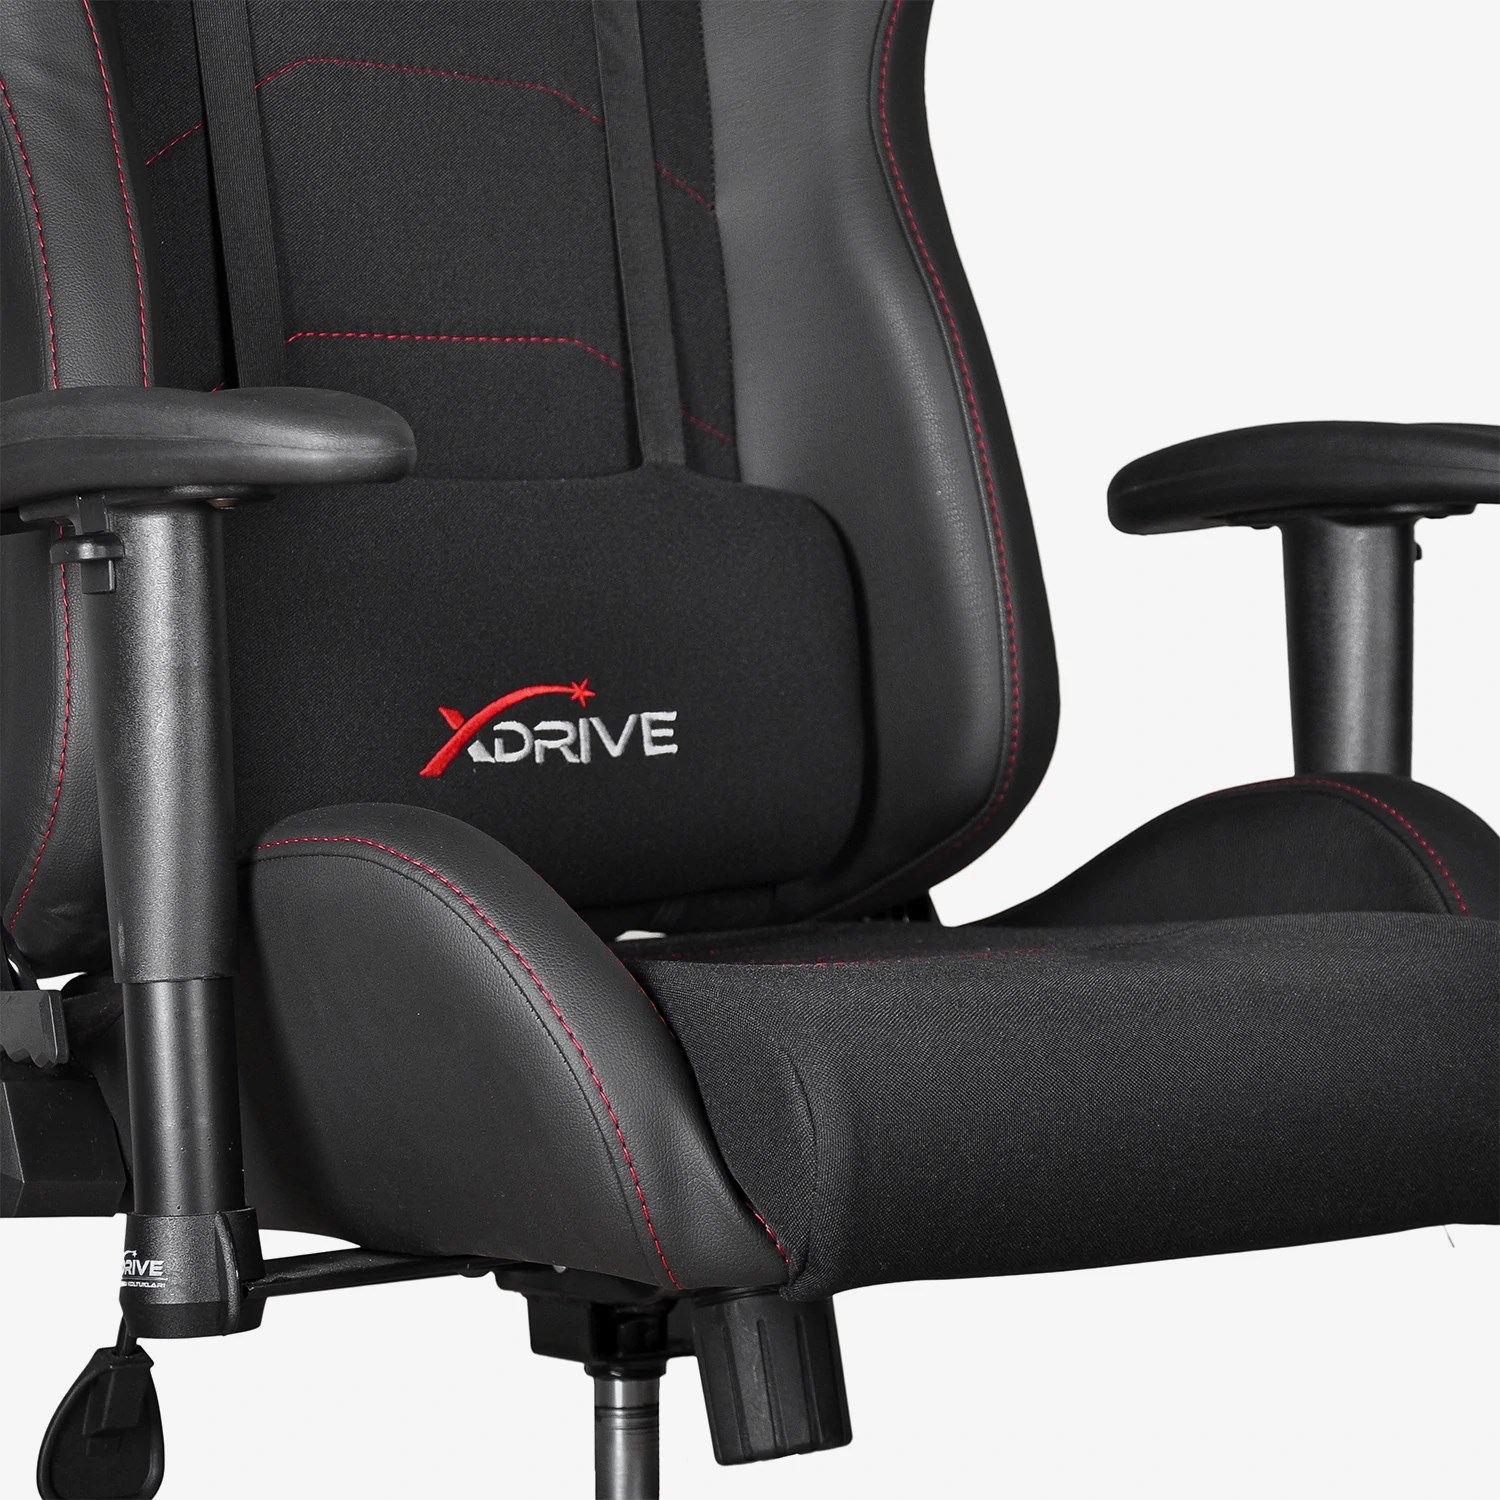 en iyi oyuncu koltuğu markası xDrive